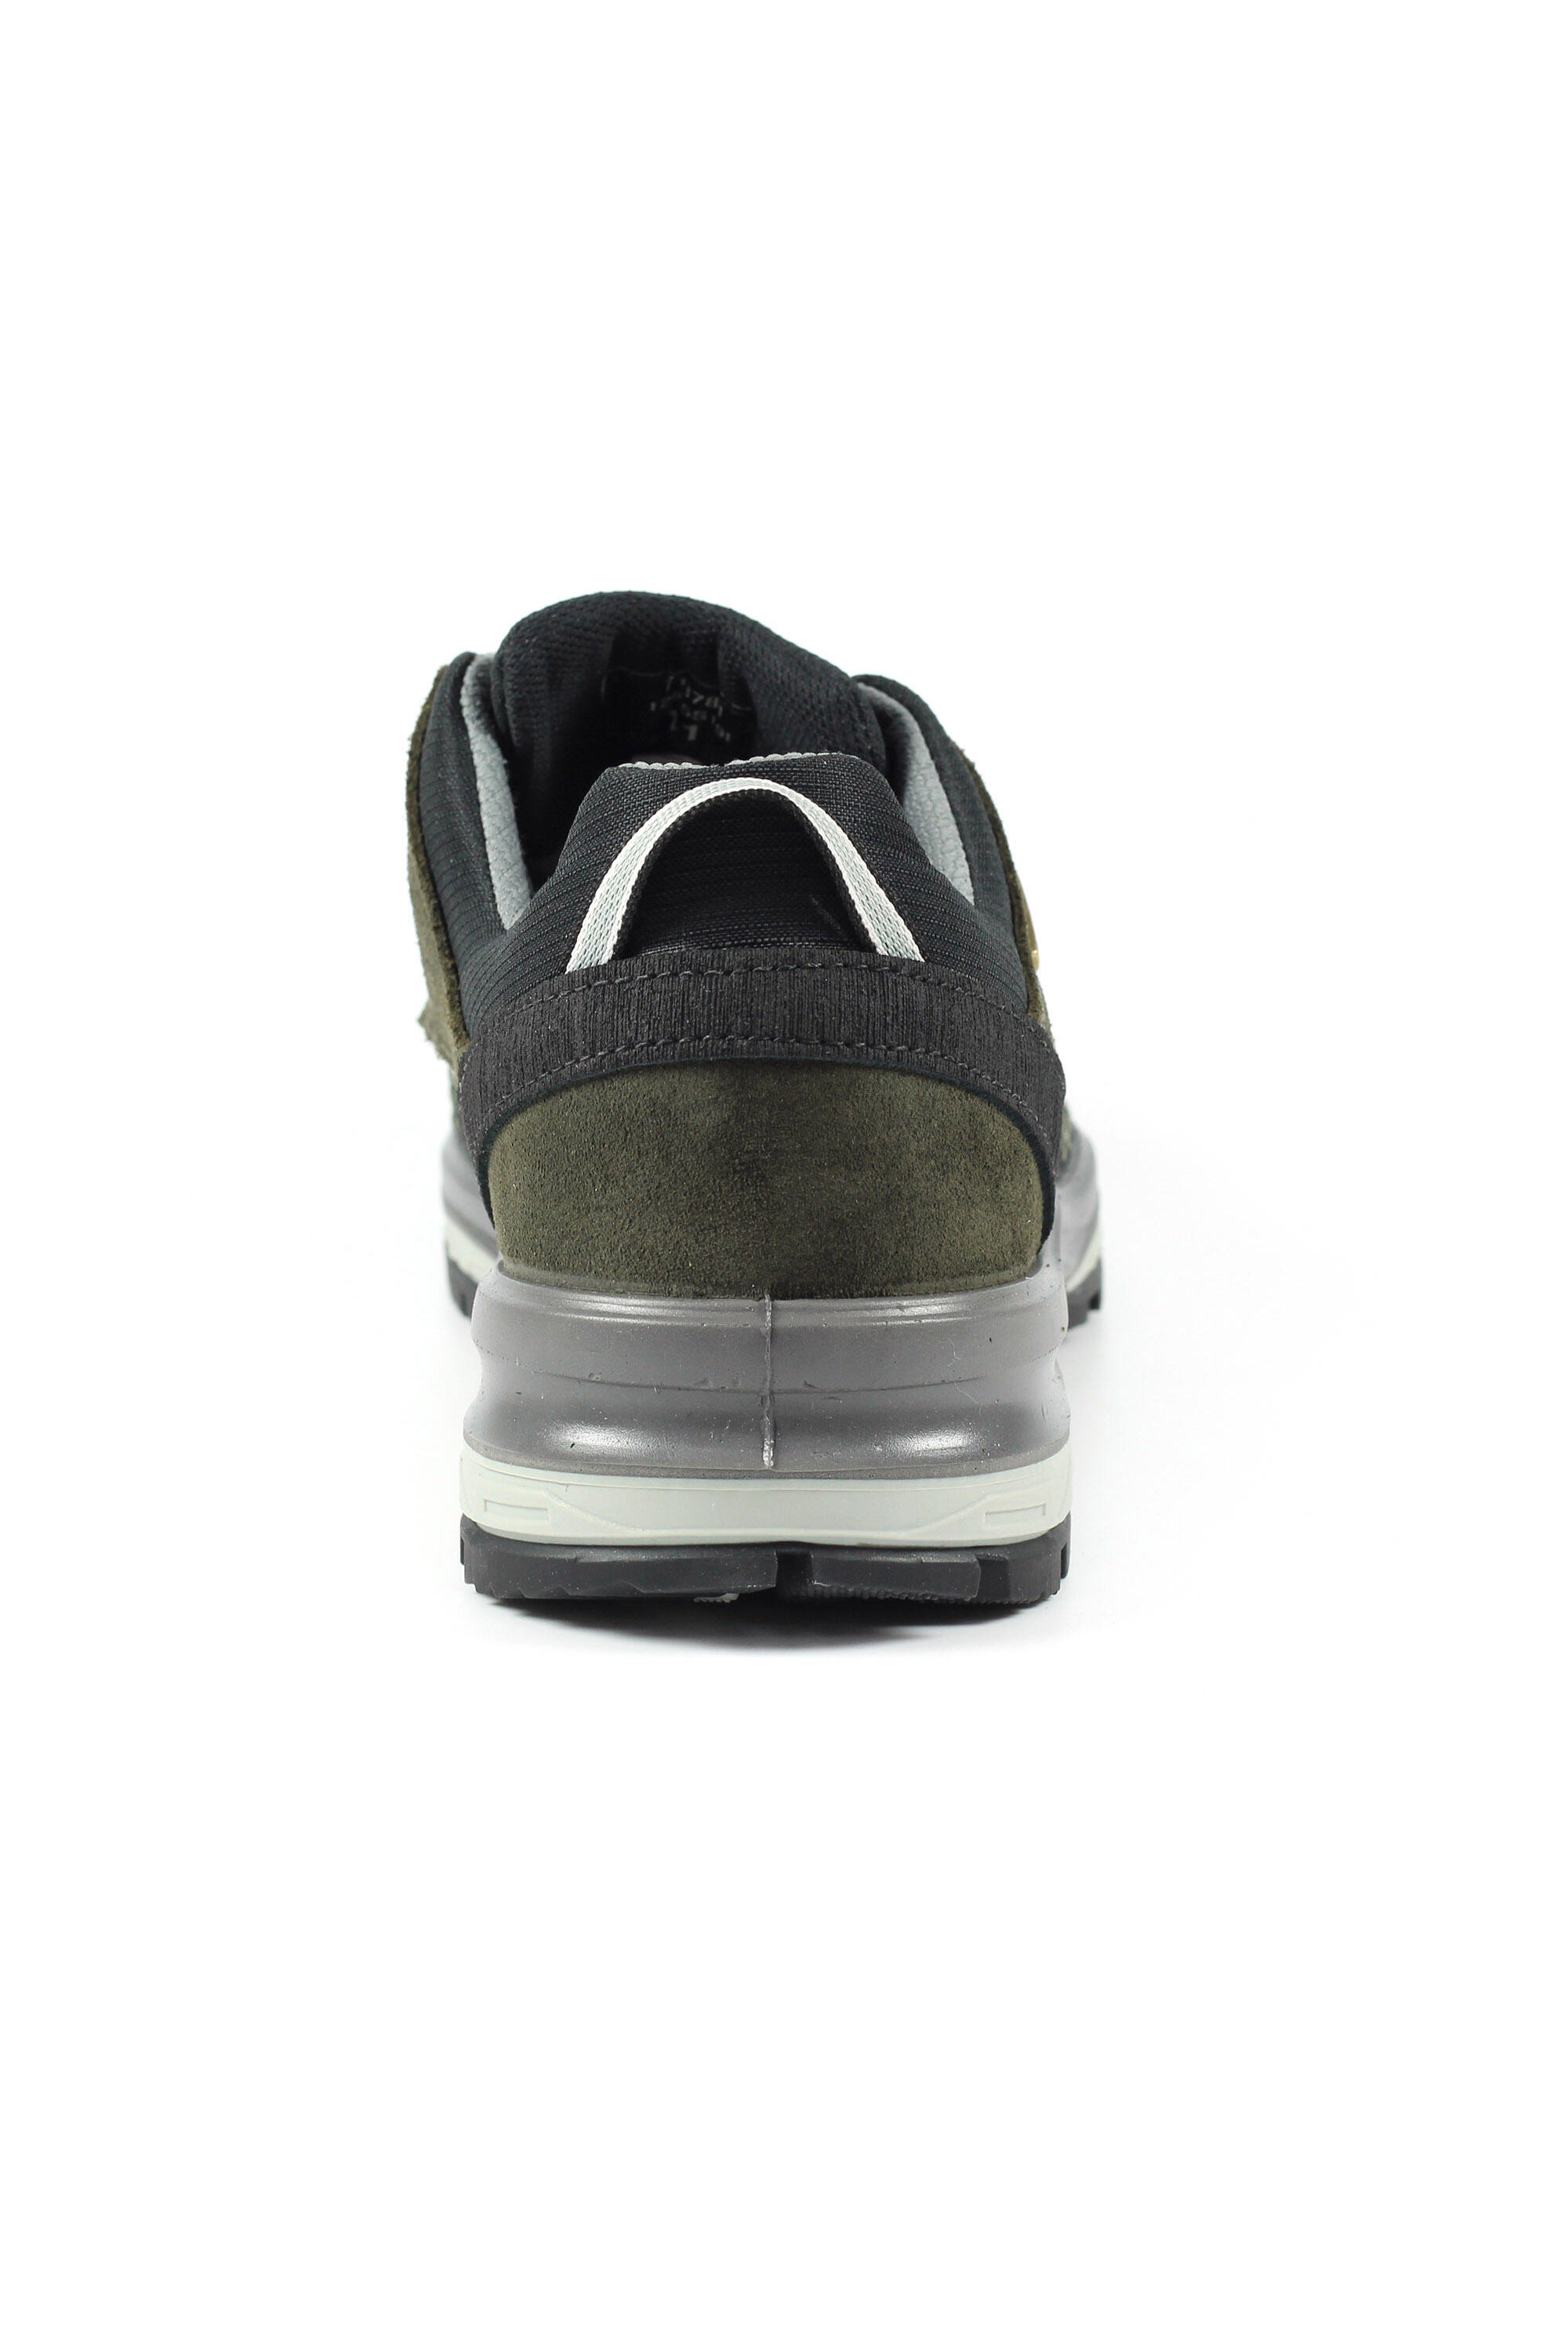 Latitude Grey Lightweight Lowland Shoe 5/5